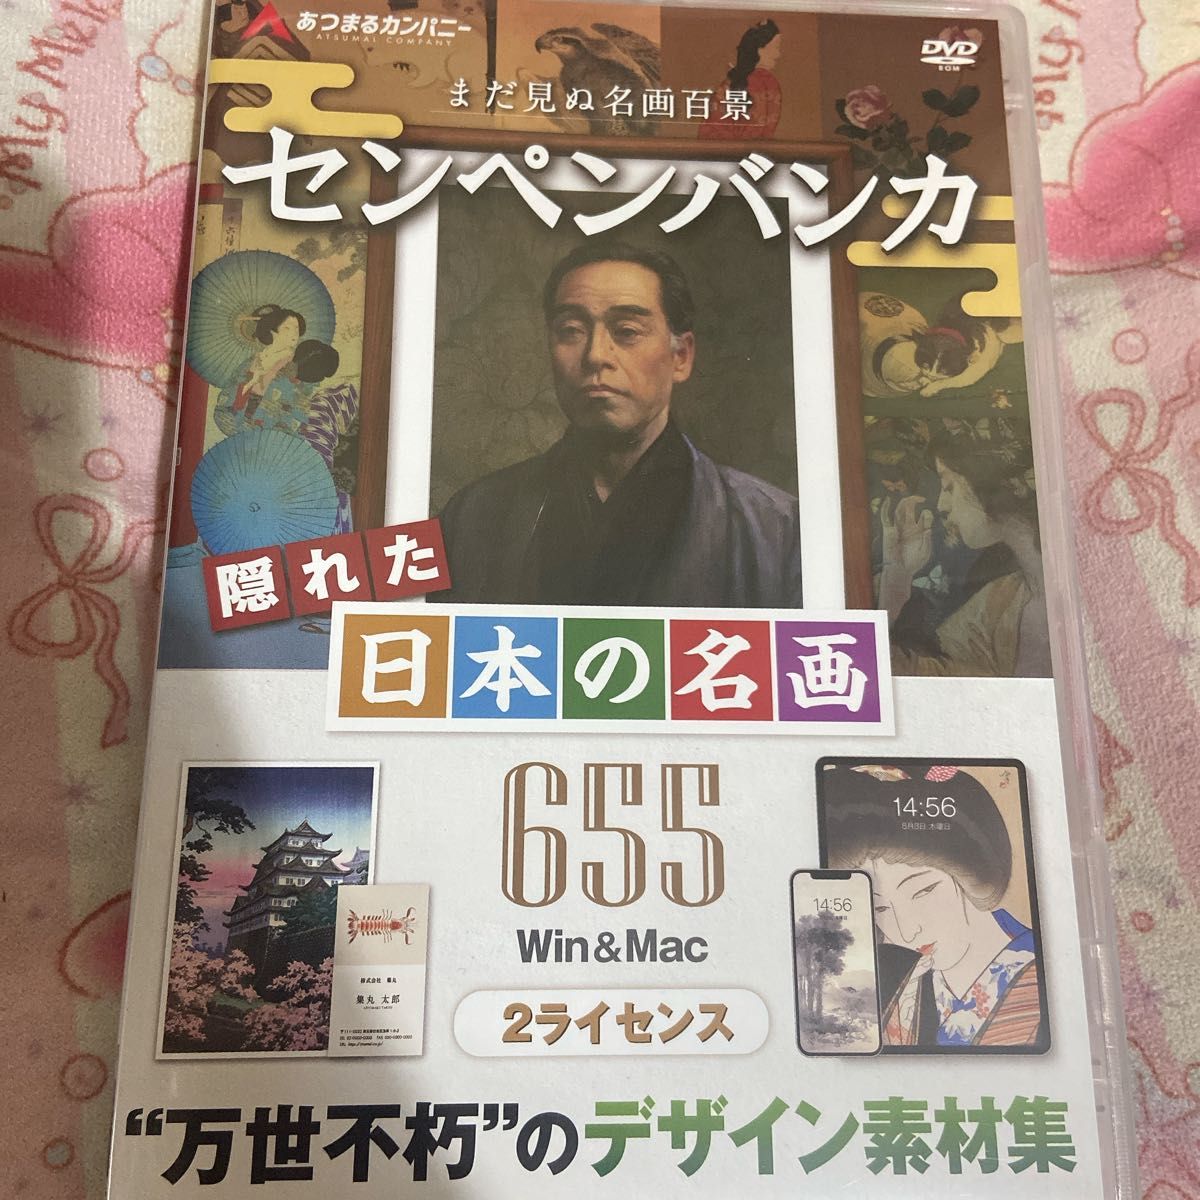 DVD  あつまるカンパニー センペンバンカ隠れた日本の名画655  商用利用可能 デジタル 素材集 高画質